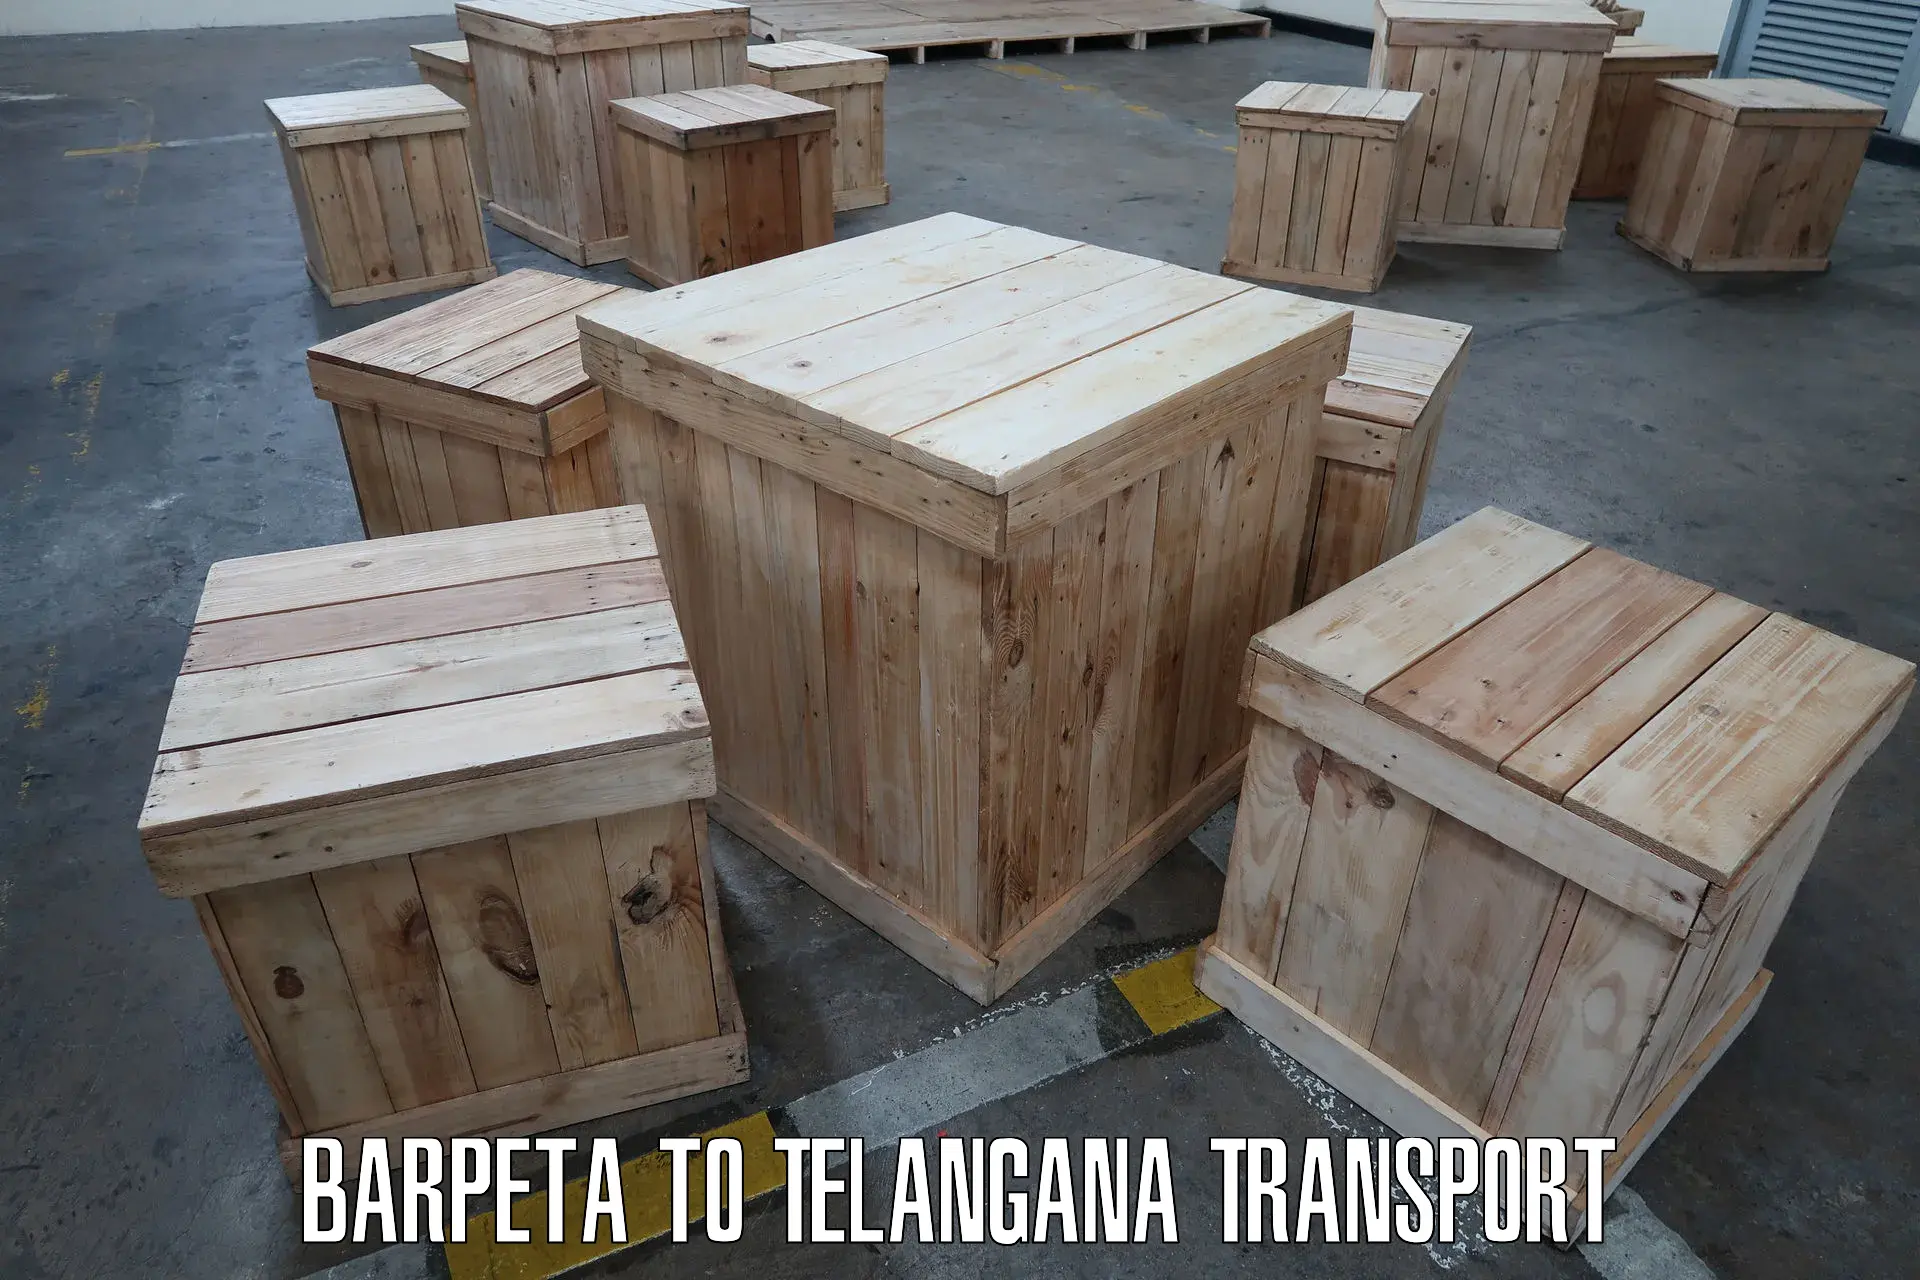 International cargo transportation services Barpeta to Karimnagar